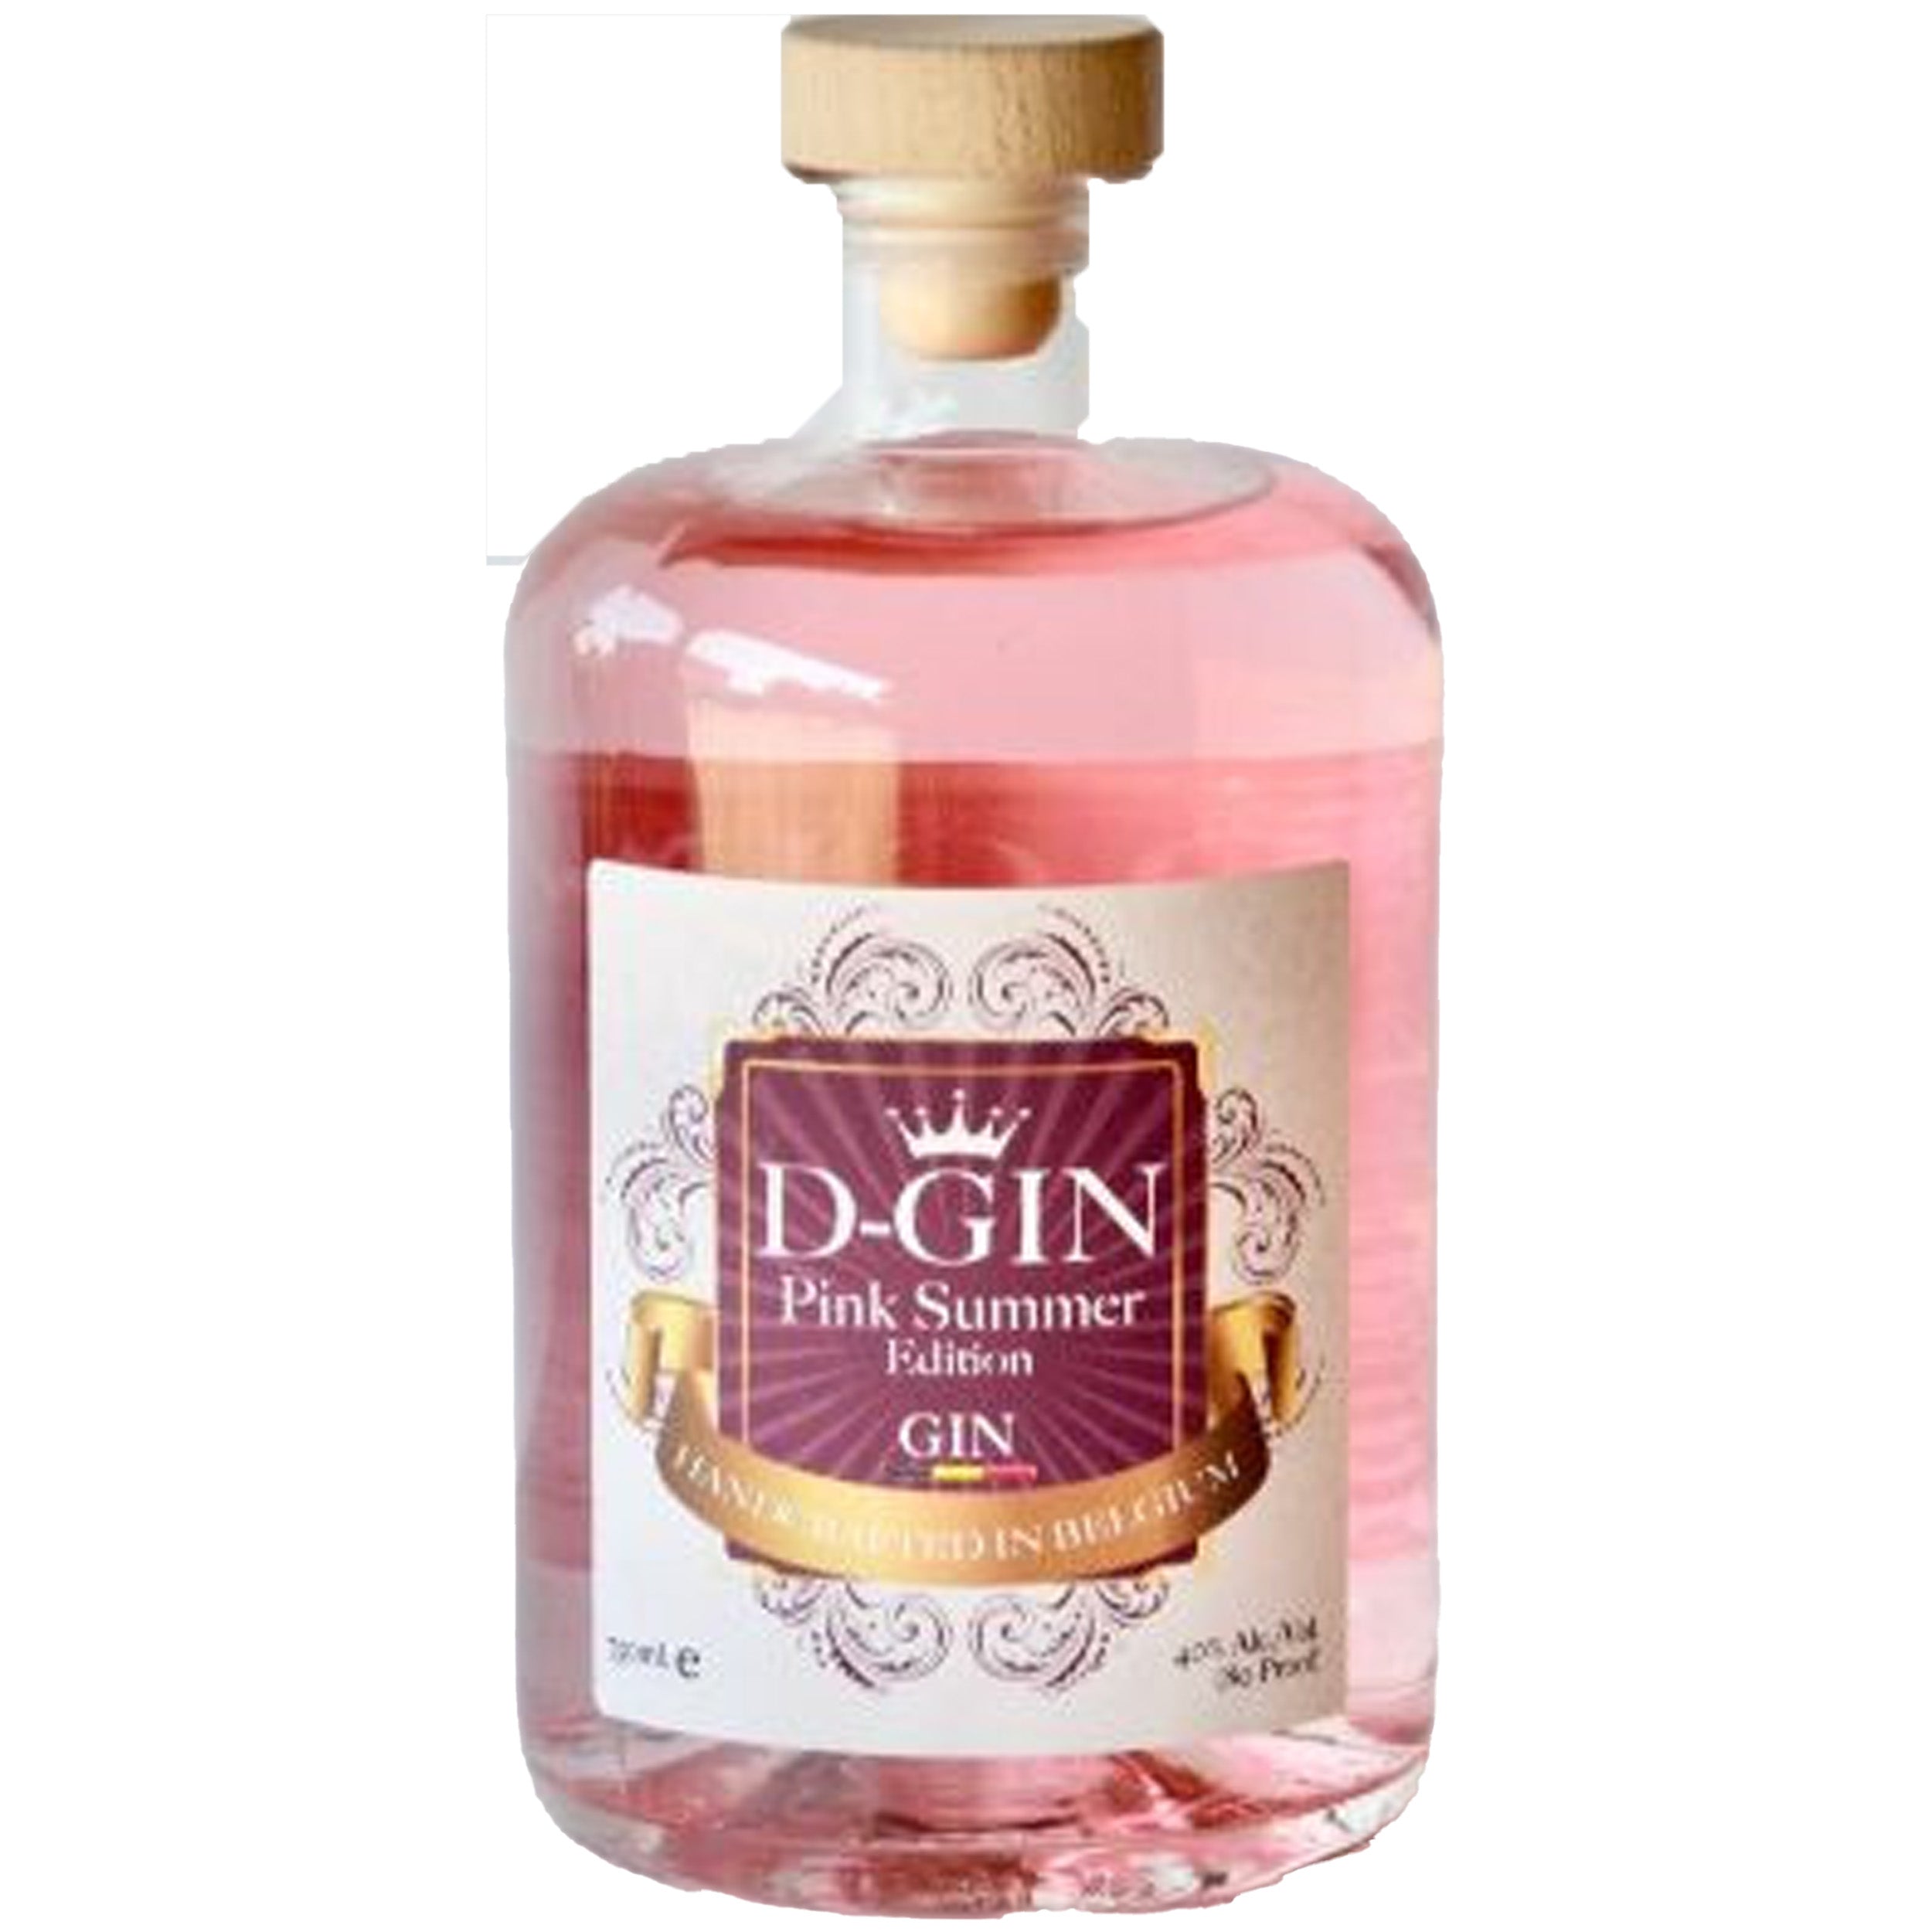 D-Gin Pink Summer